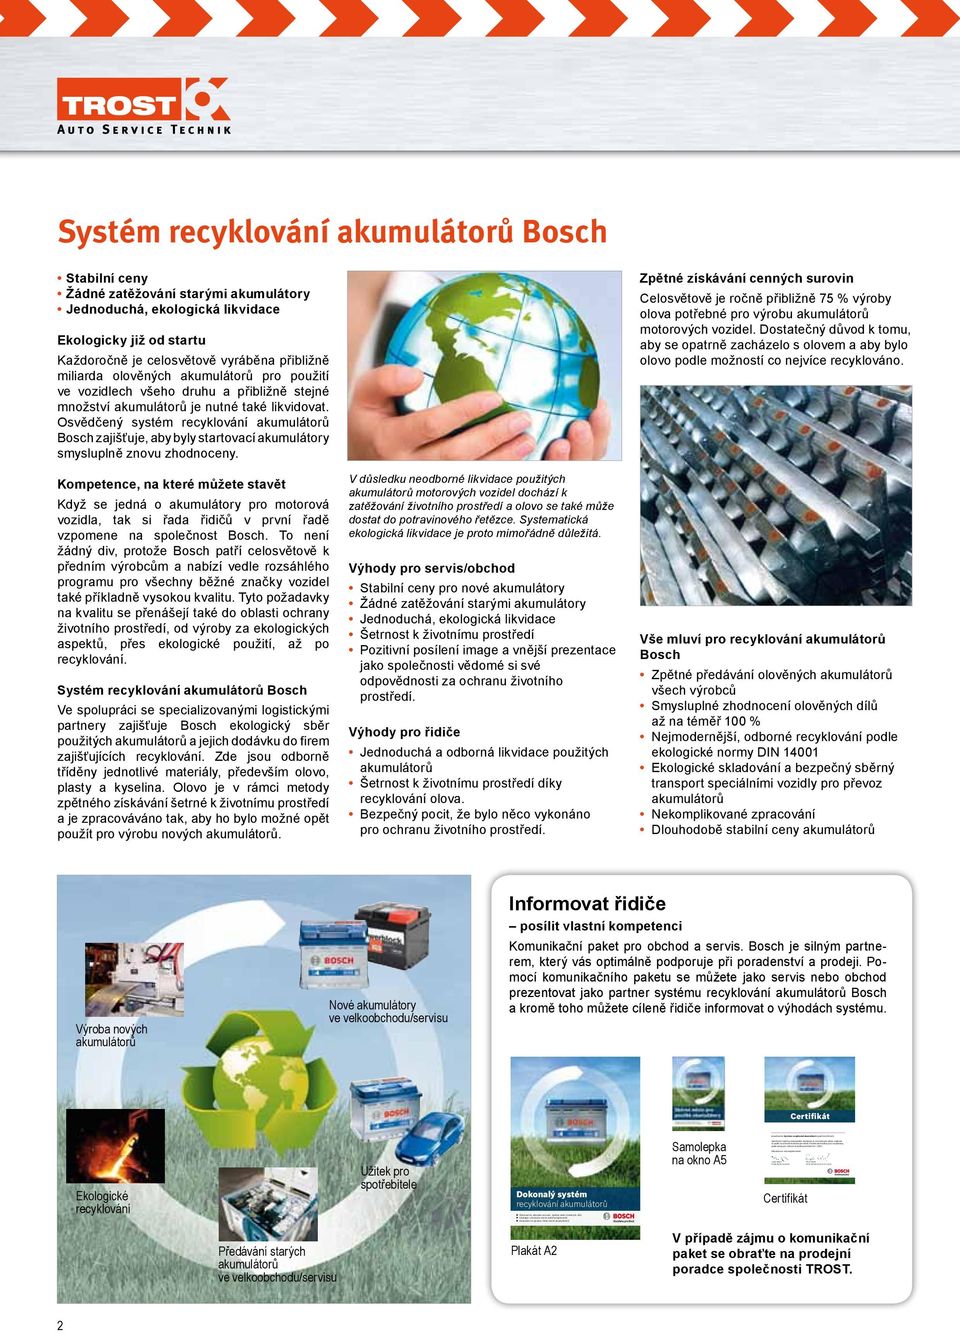 Použité akumulátory jsou recyklovány podle normy pro ochranu životního prostředí ISO 14001. Děkujeme za vaši angažovanost.